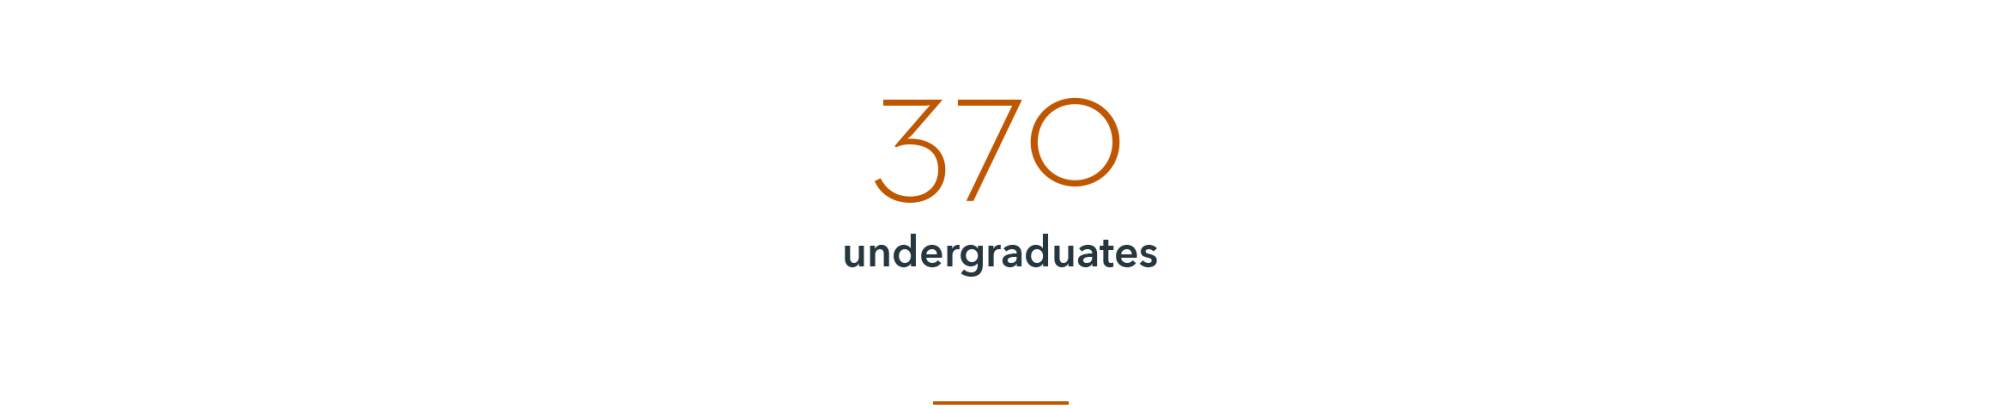 infographic: 370 undergraduates